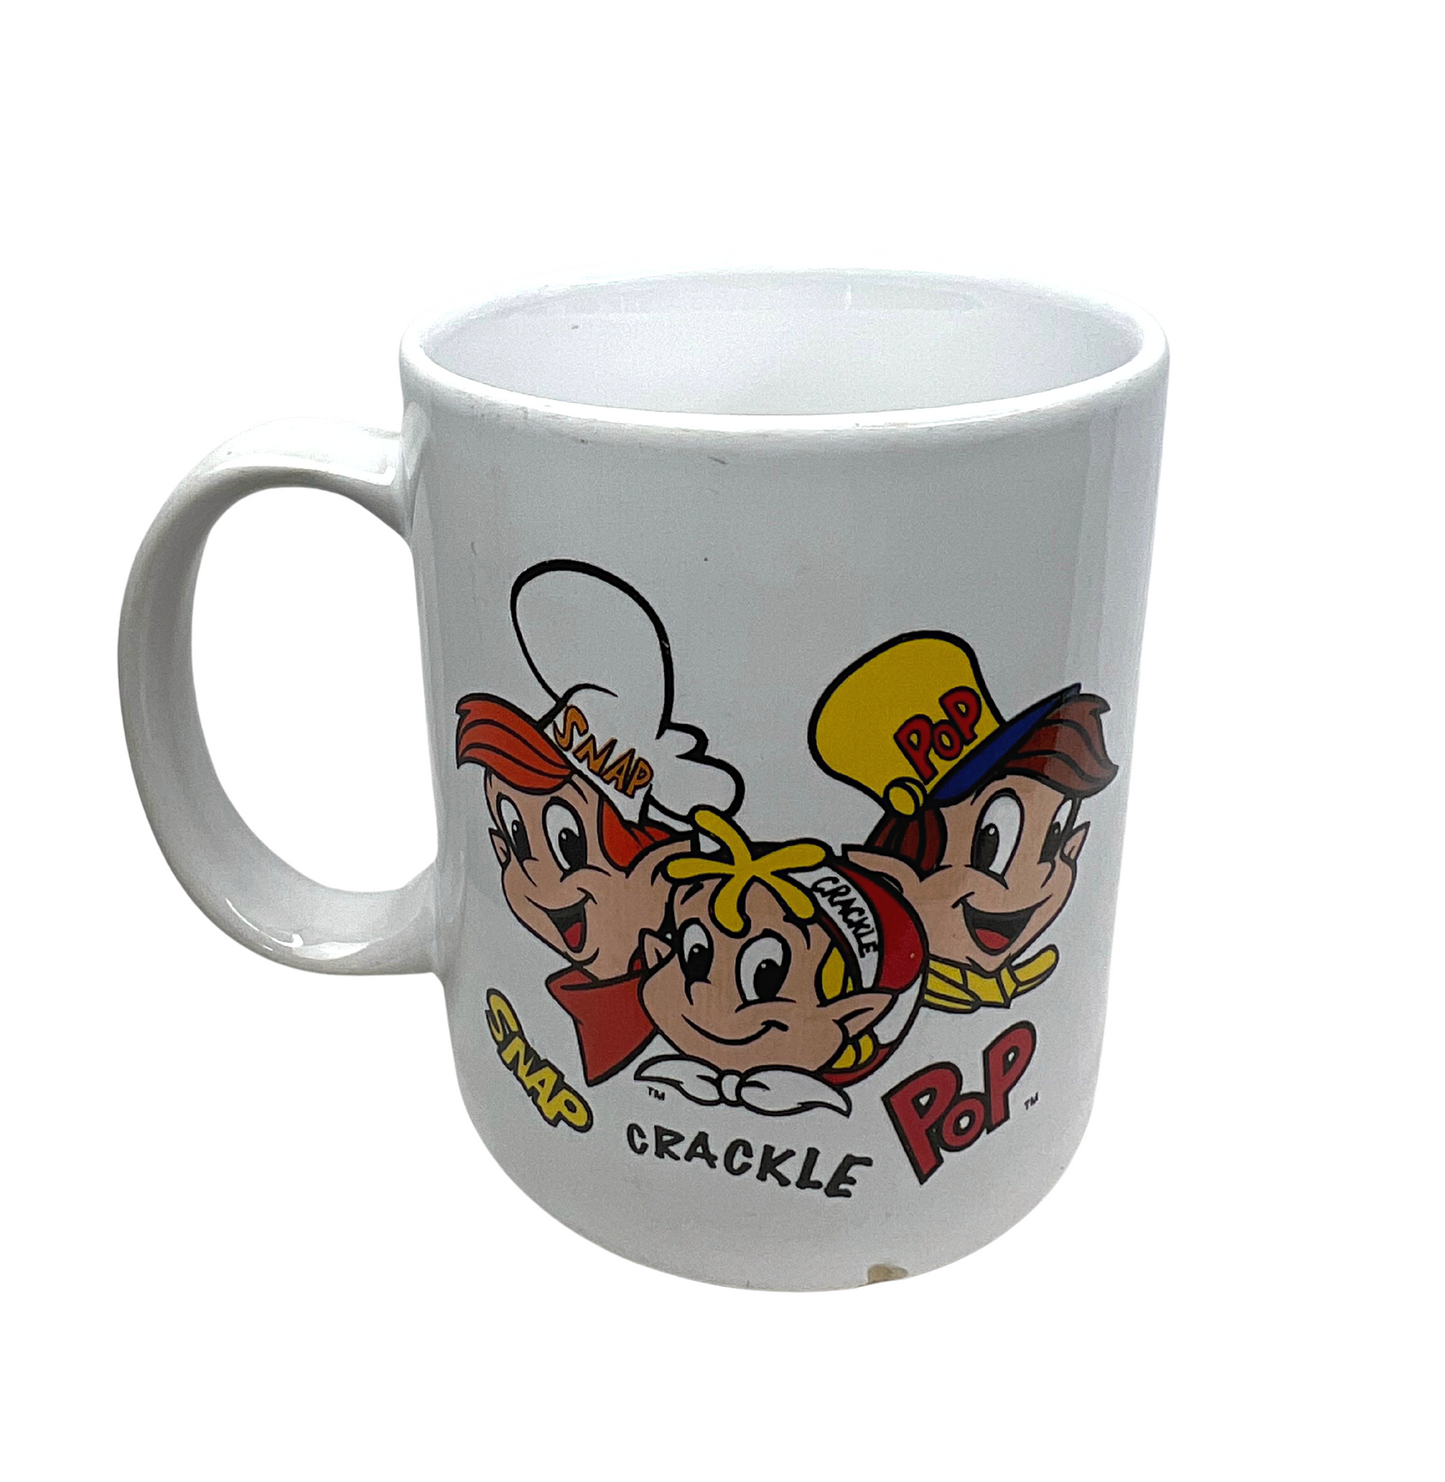 2001 Rice Krispies Snap Crackle Pop Cereal Coffee Mug